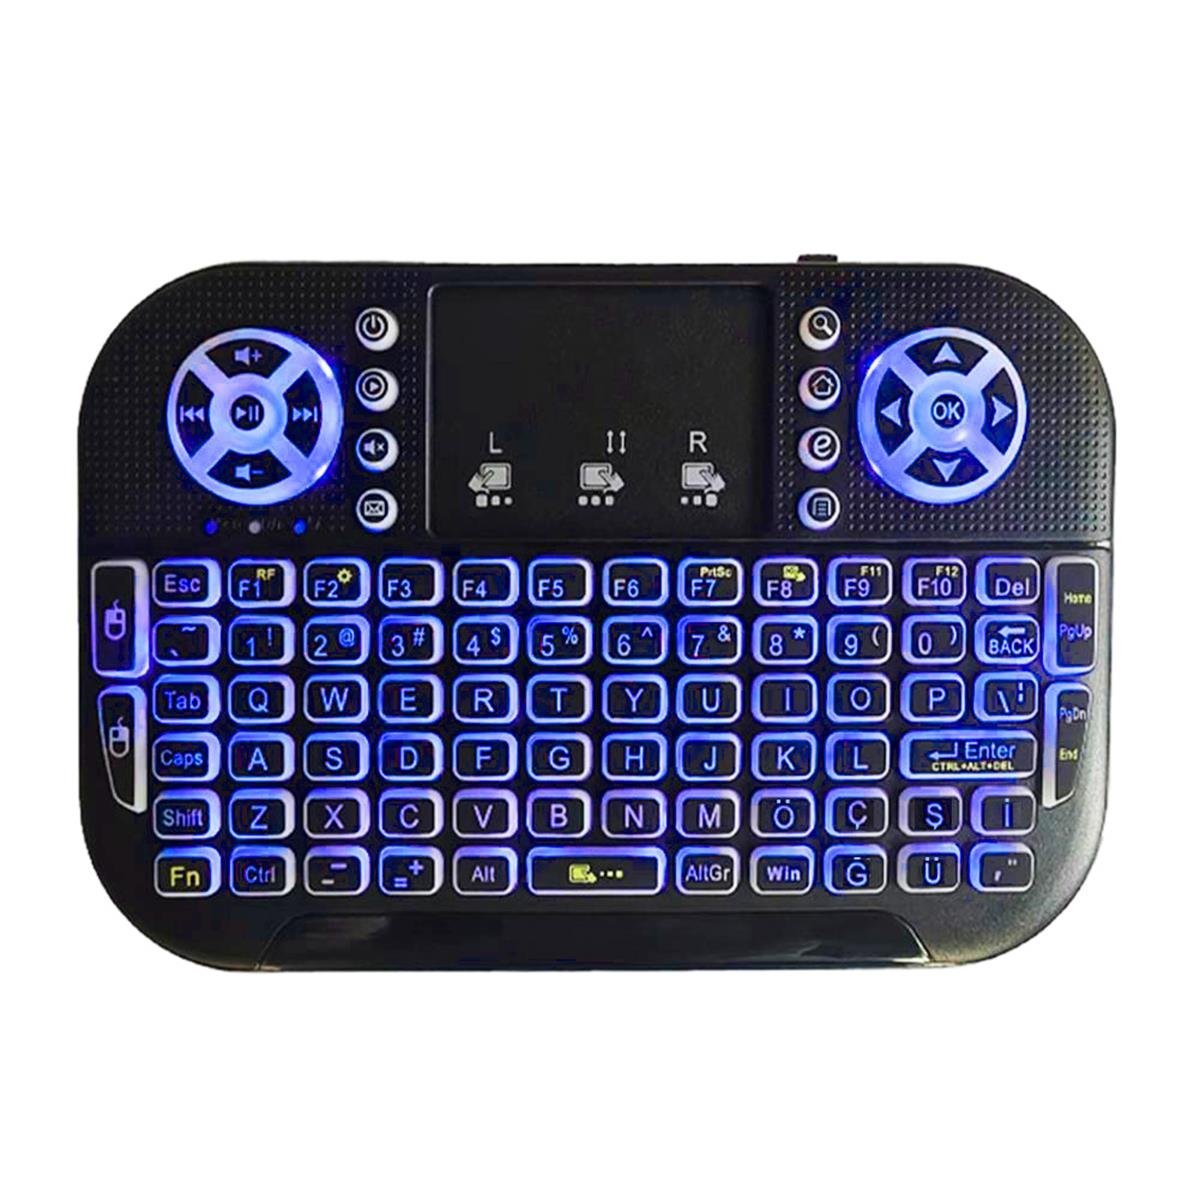 Kobra Pro Türkçe Işıklı Dual Mode (Infrared ve Bluetooth) Mini Klavye